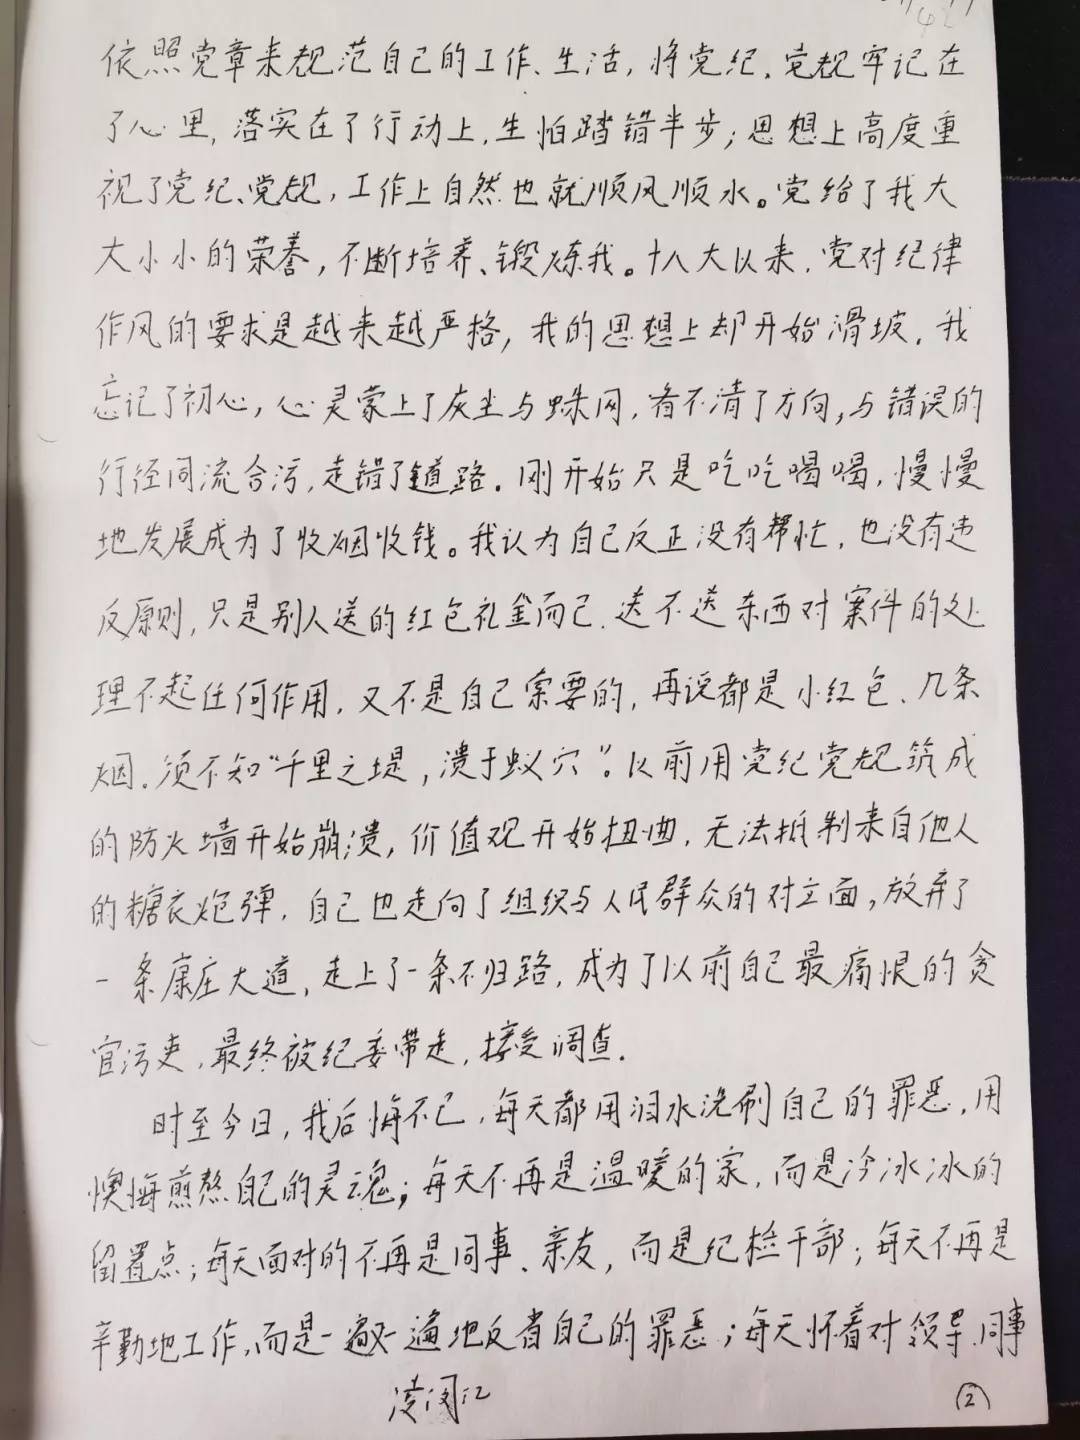 湖南一法官手写忏悔书:我活成了自己最痛恨的贪官污吏